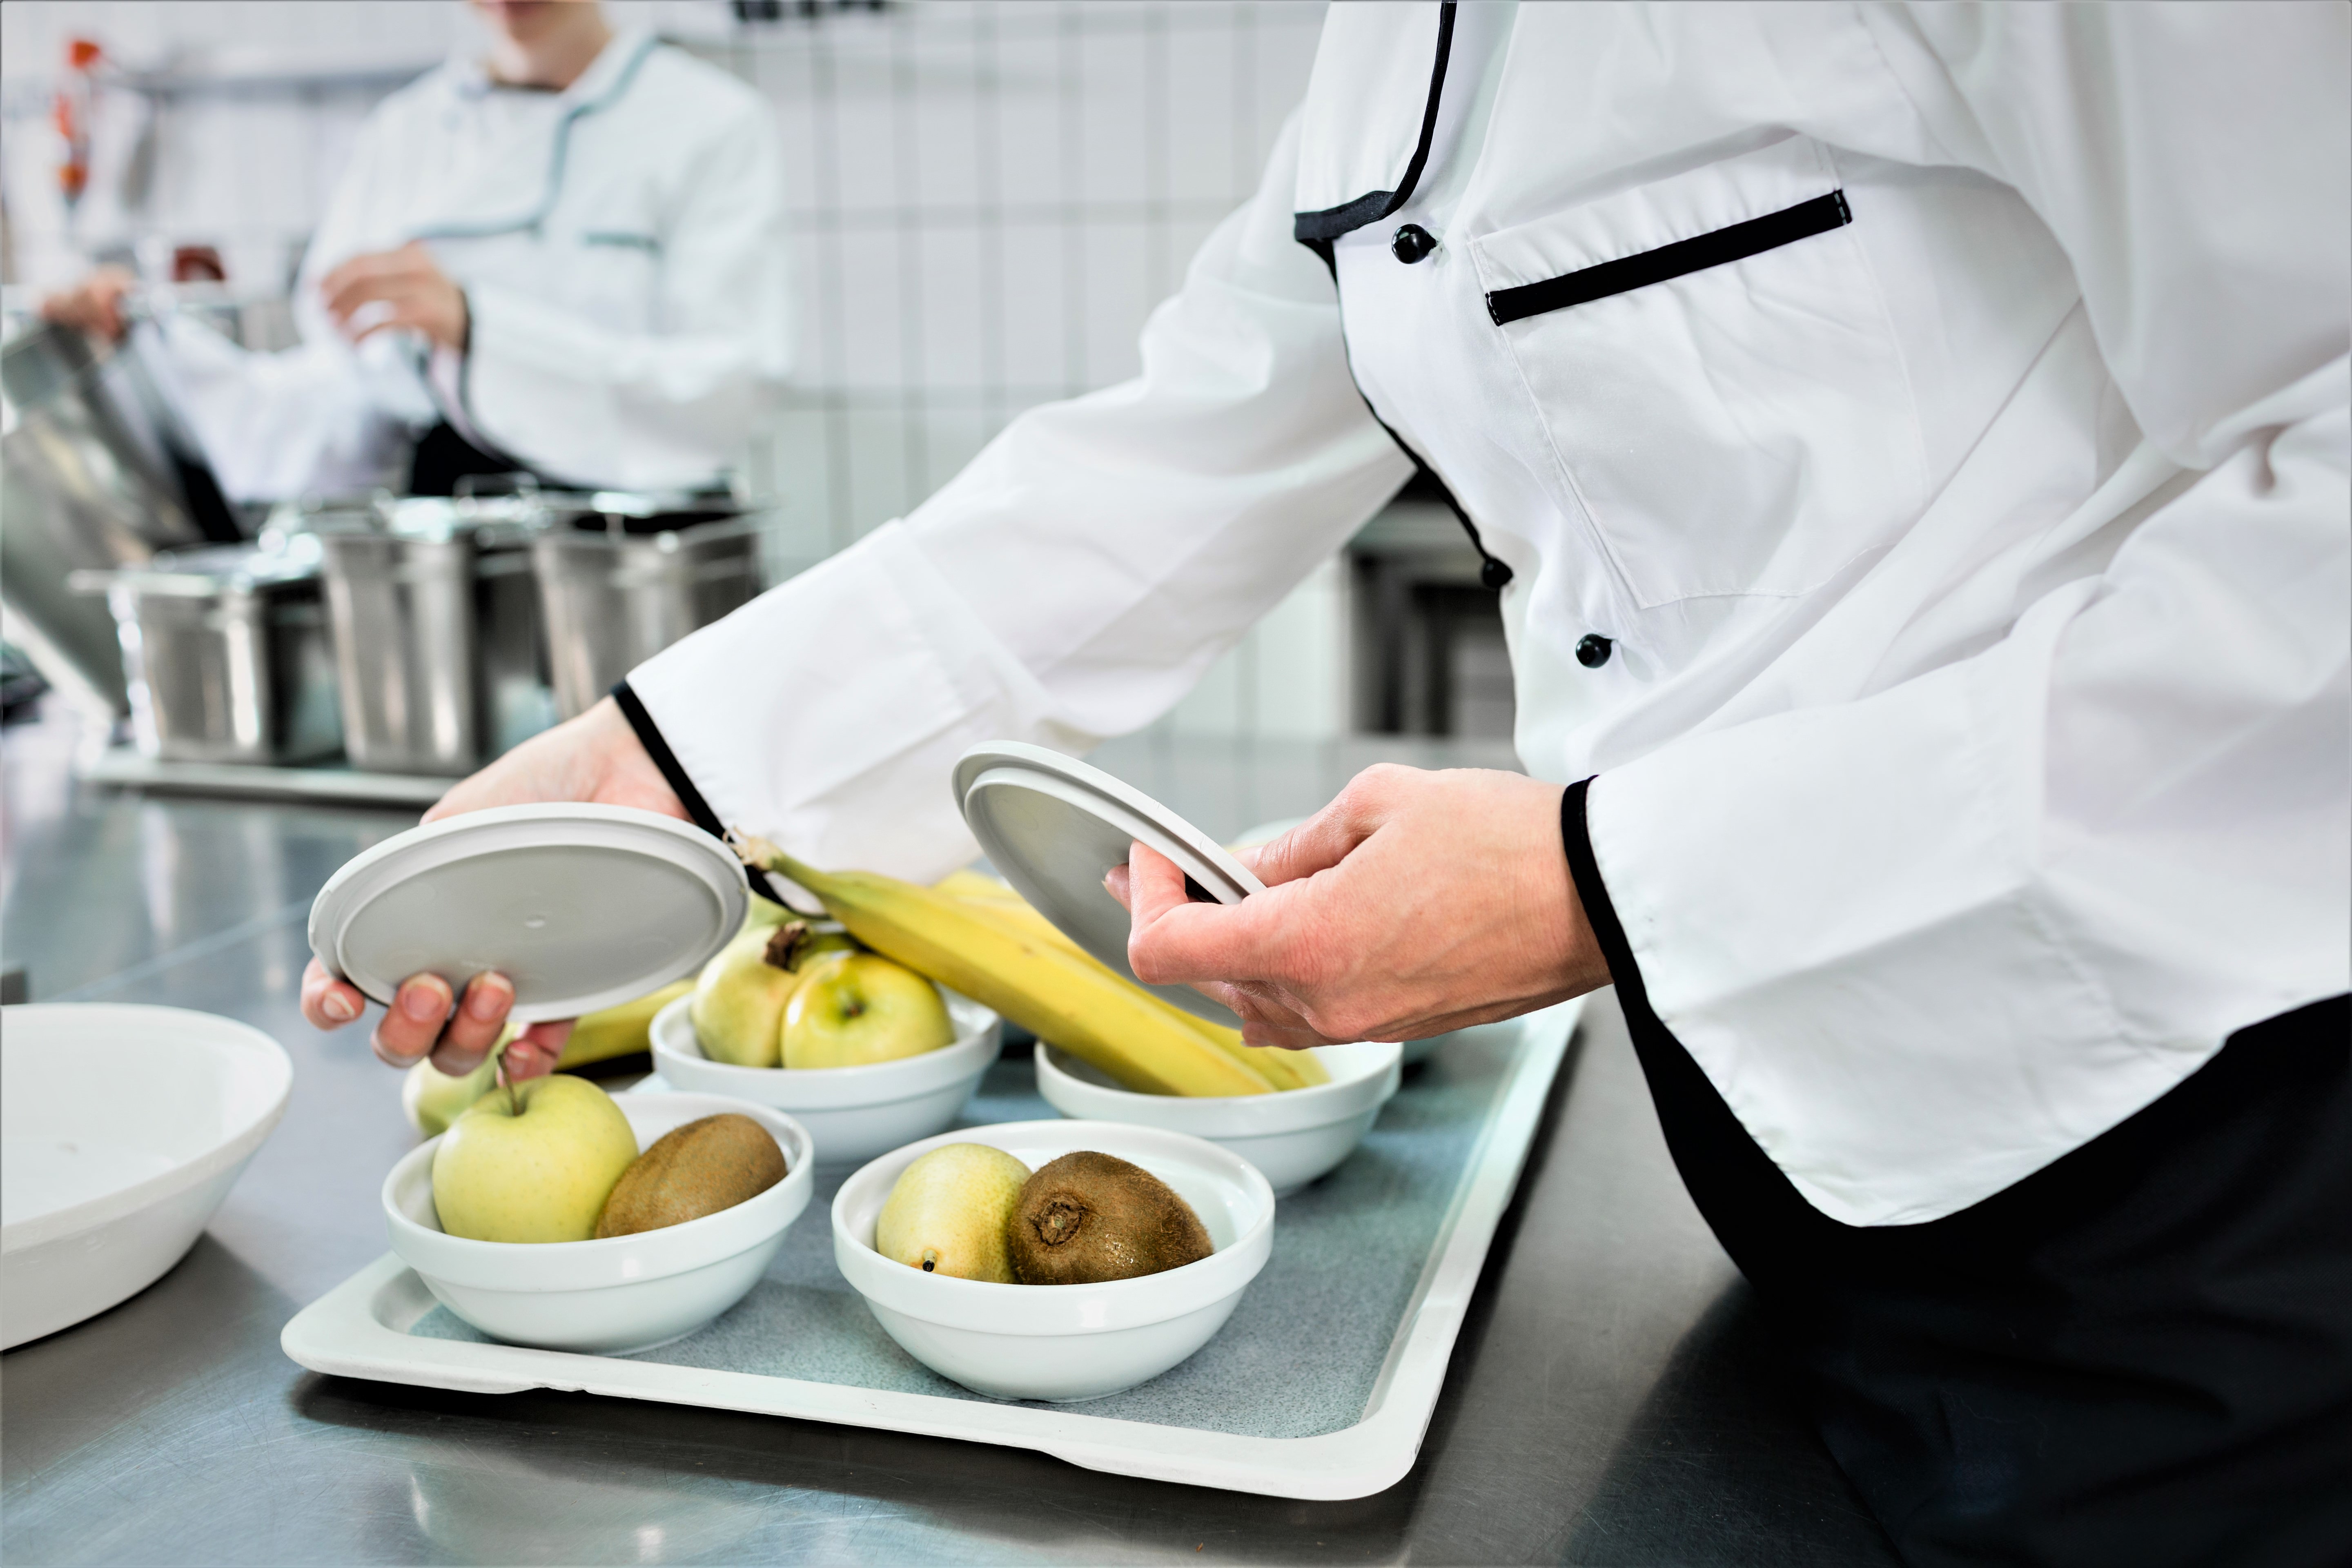 En kok er ved at anrette skåle med frugt; bananer, kiwier og æbler, i et køkken.